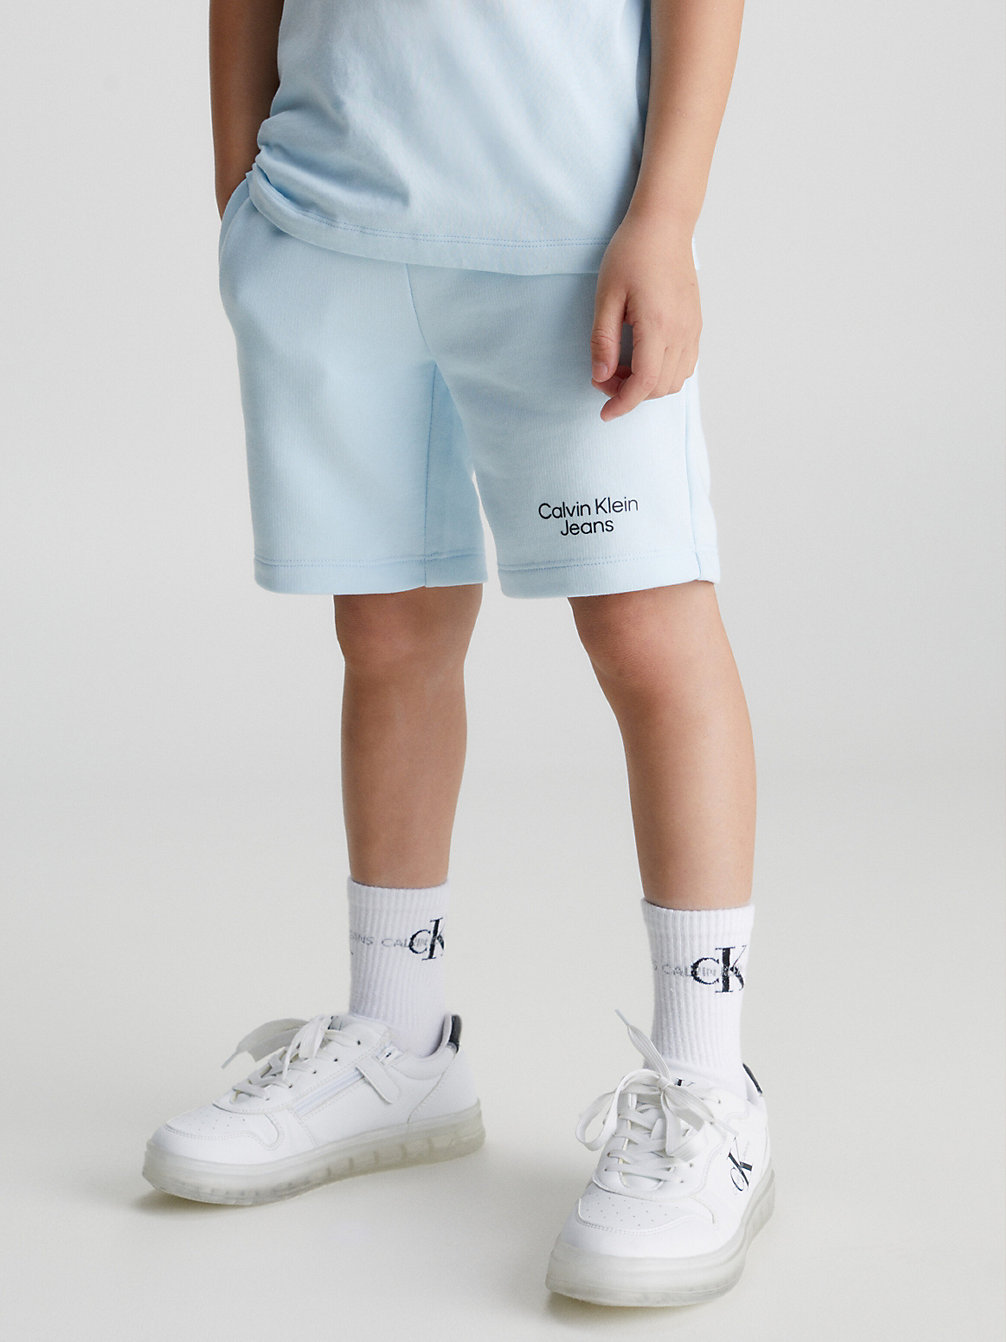 KEEPSAKE BLUE > Облегающие тренировочные шорты > undefined boys - Calvin Klein